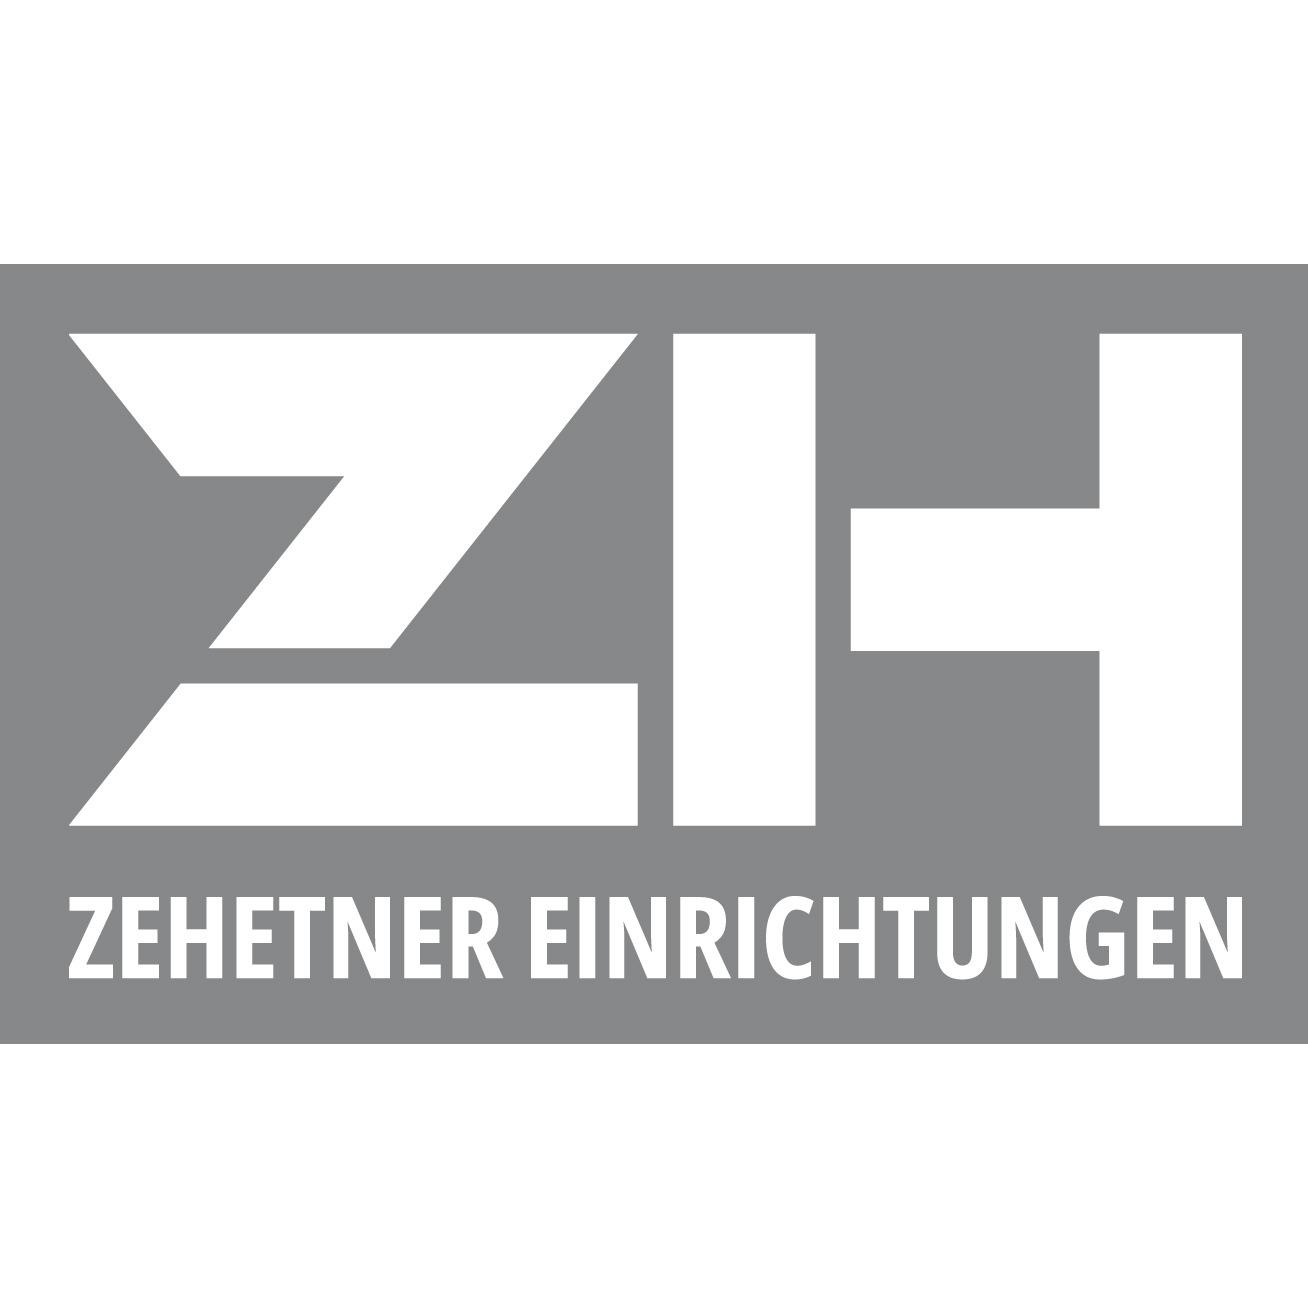 ZEHETNER EINRICHTUNGEN GmbH Logo